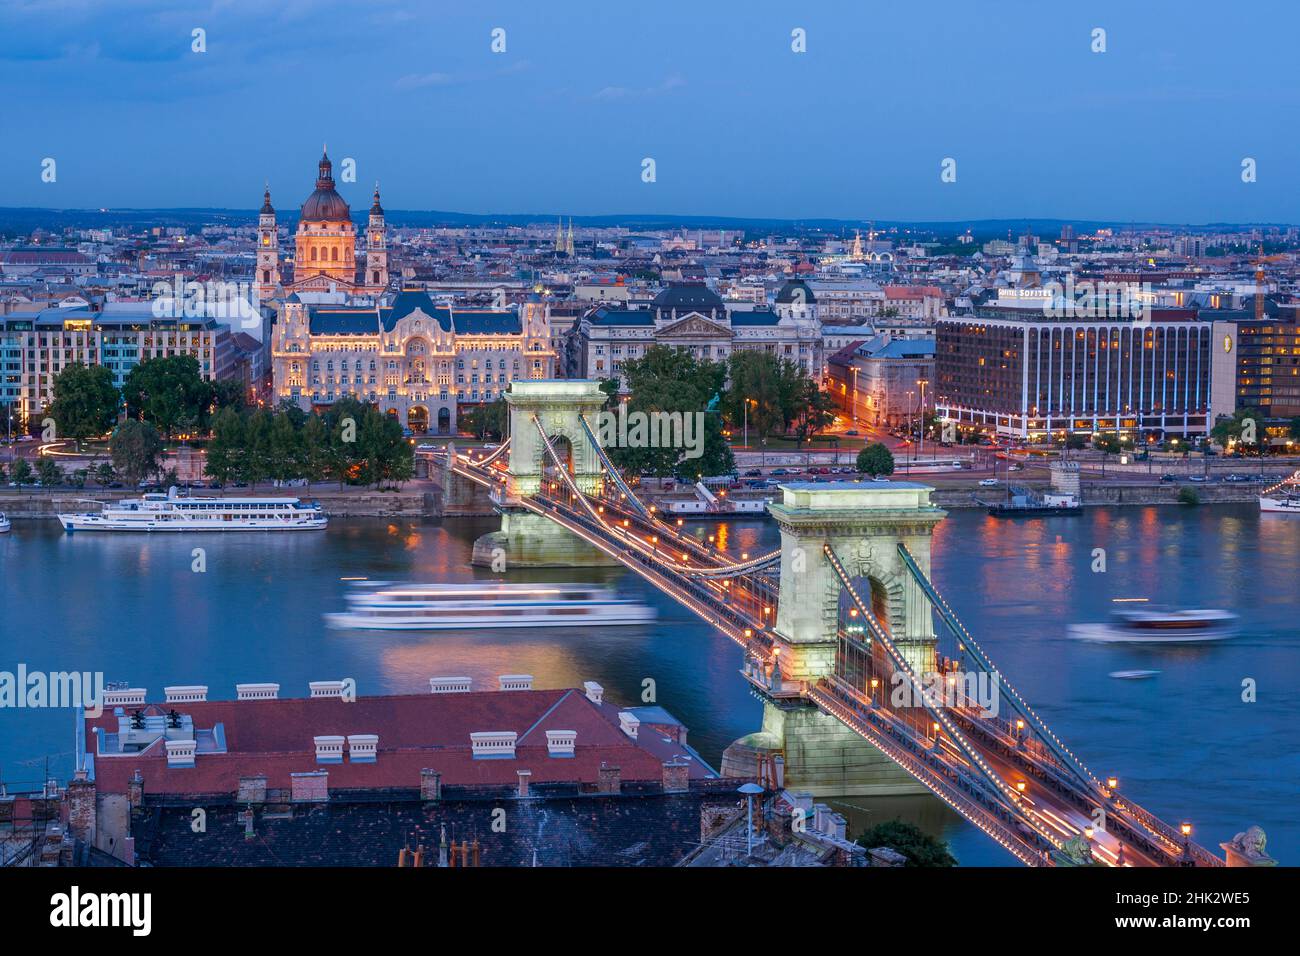 Ungarn, Budapest. Szechenyi Kettenbrücke über die Donau. Nachts beleuchtet, zwischen 1839-49 erbaut, wird es von zwei Türmen und stret unterstützt Stockfoto